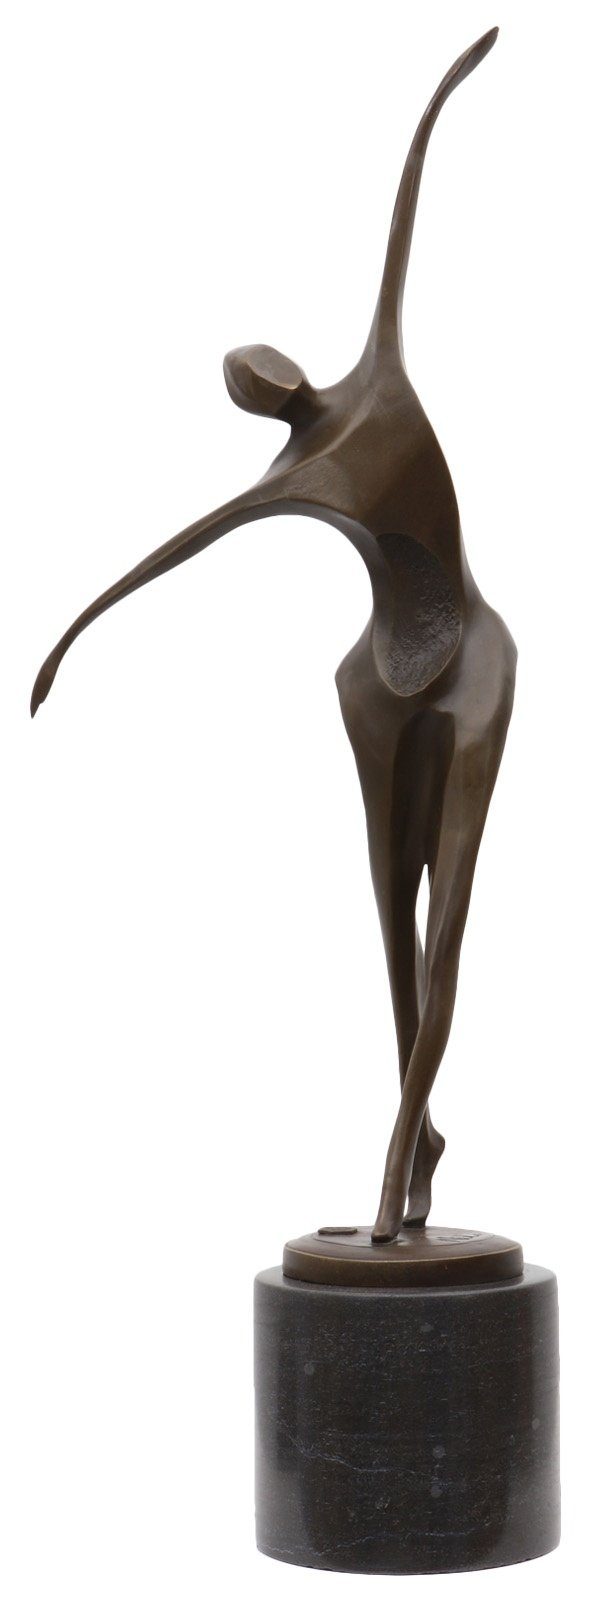 Aubaho Skulptur Bronzeskulptur Mann Tänzer im Bronze Figur Antik-Stil 57cm Statue